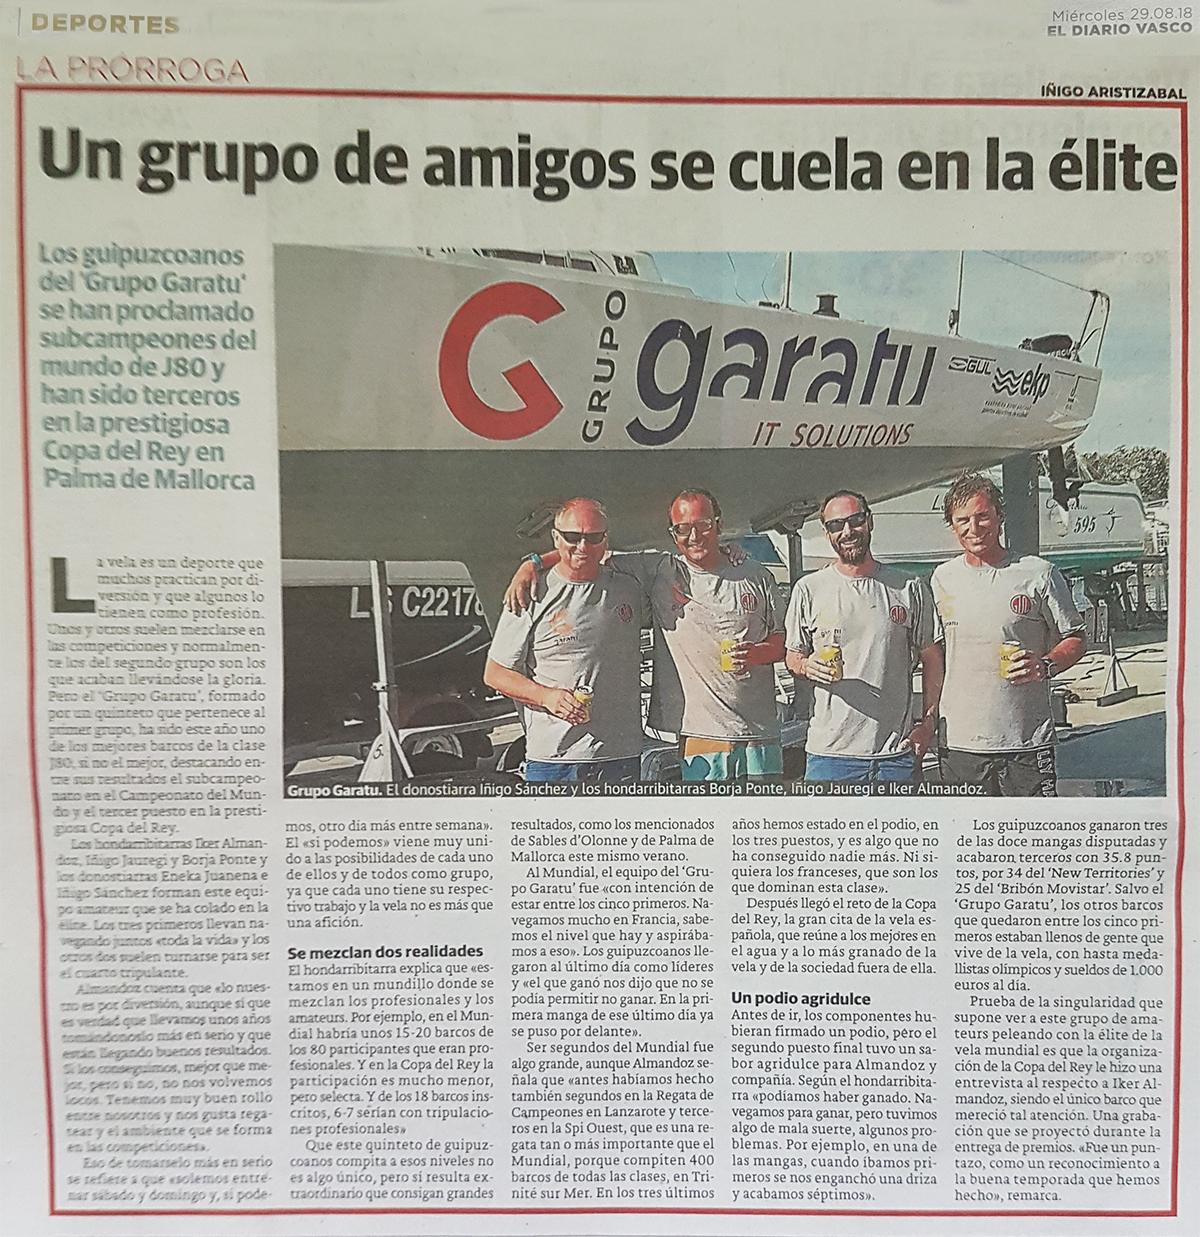 Entrevista en el periodico diario vasco al equipo de AD Grupo Garatu como amateurs ganadores del subcampeonato del mundo J80 y terceros en la Copa del Rey Mapfre 2018